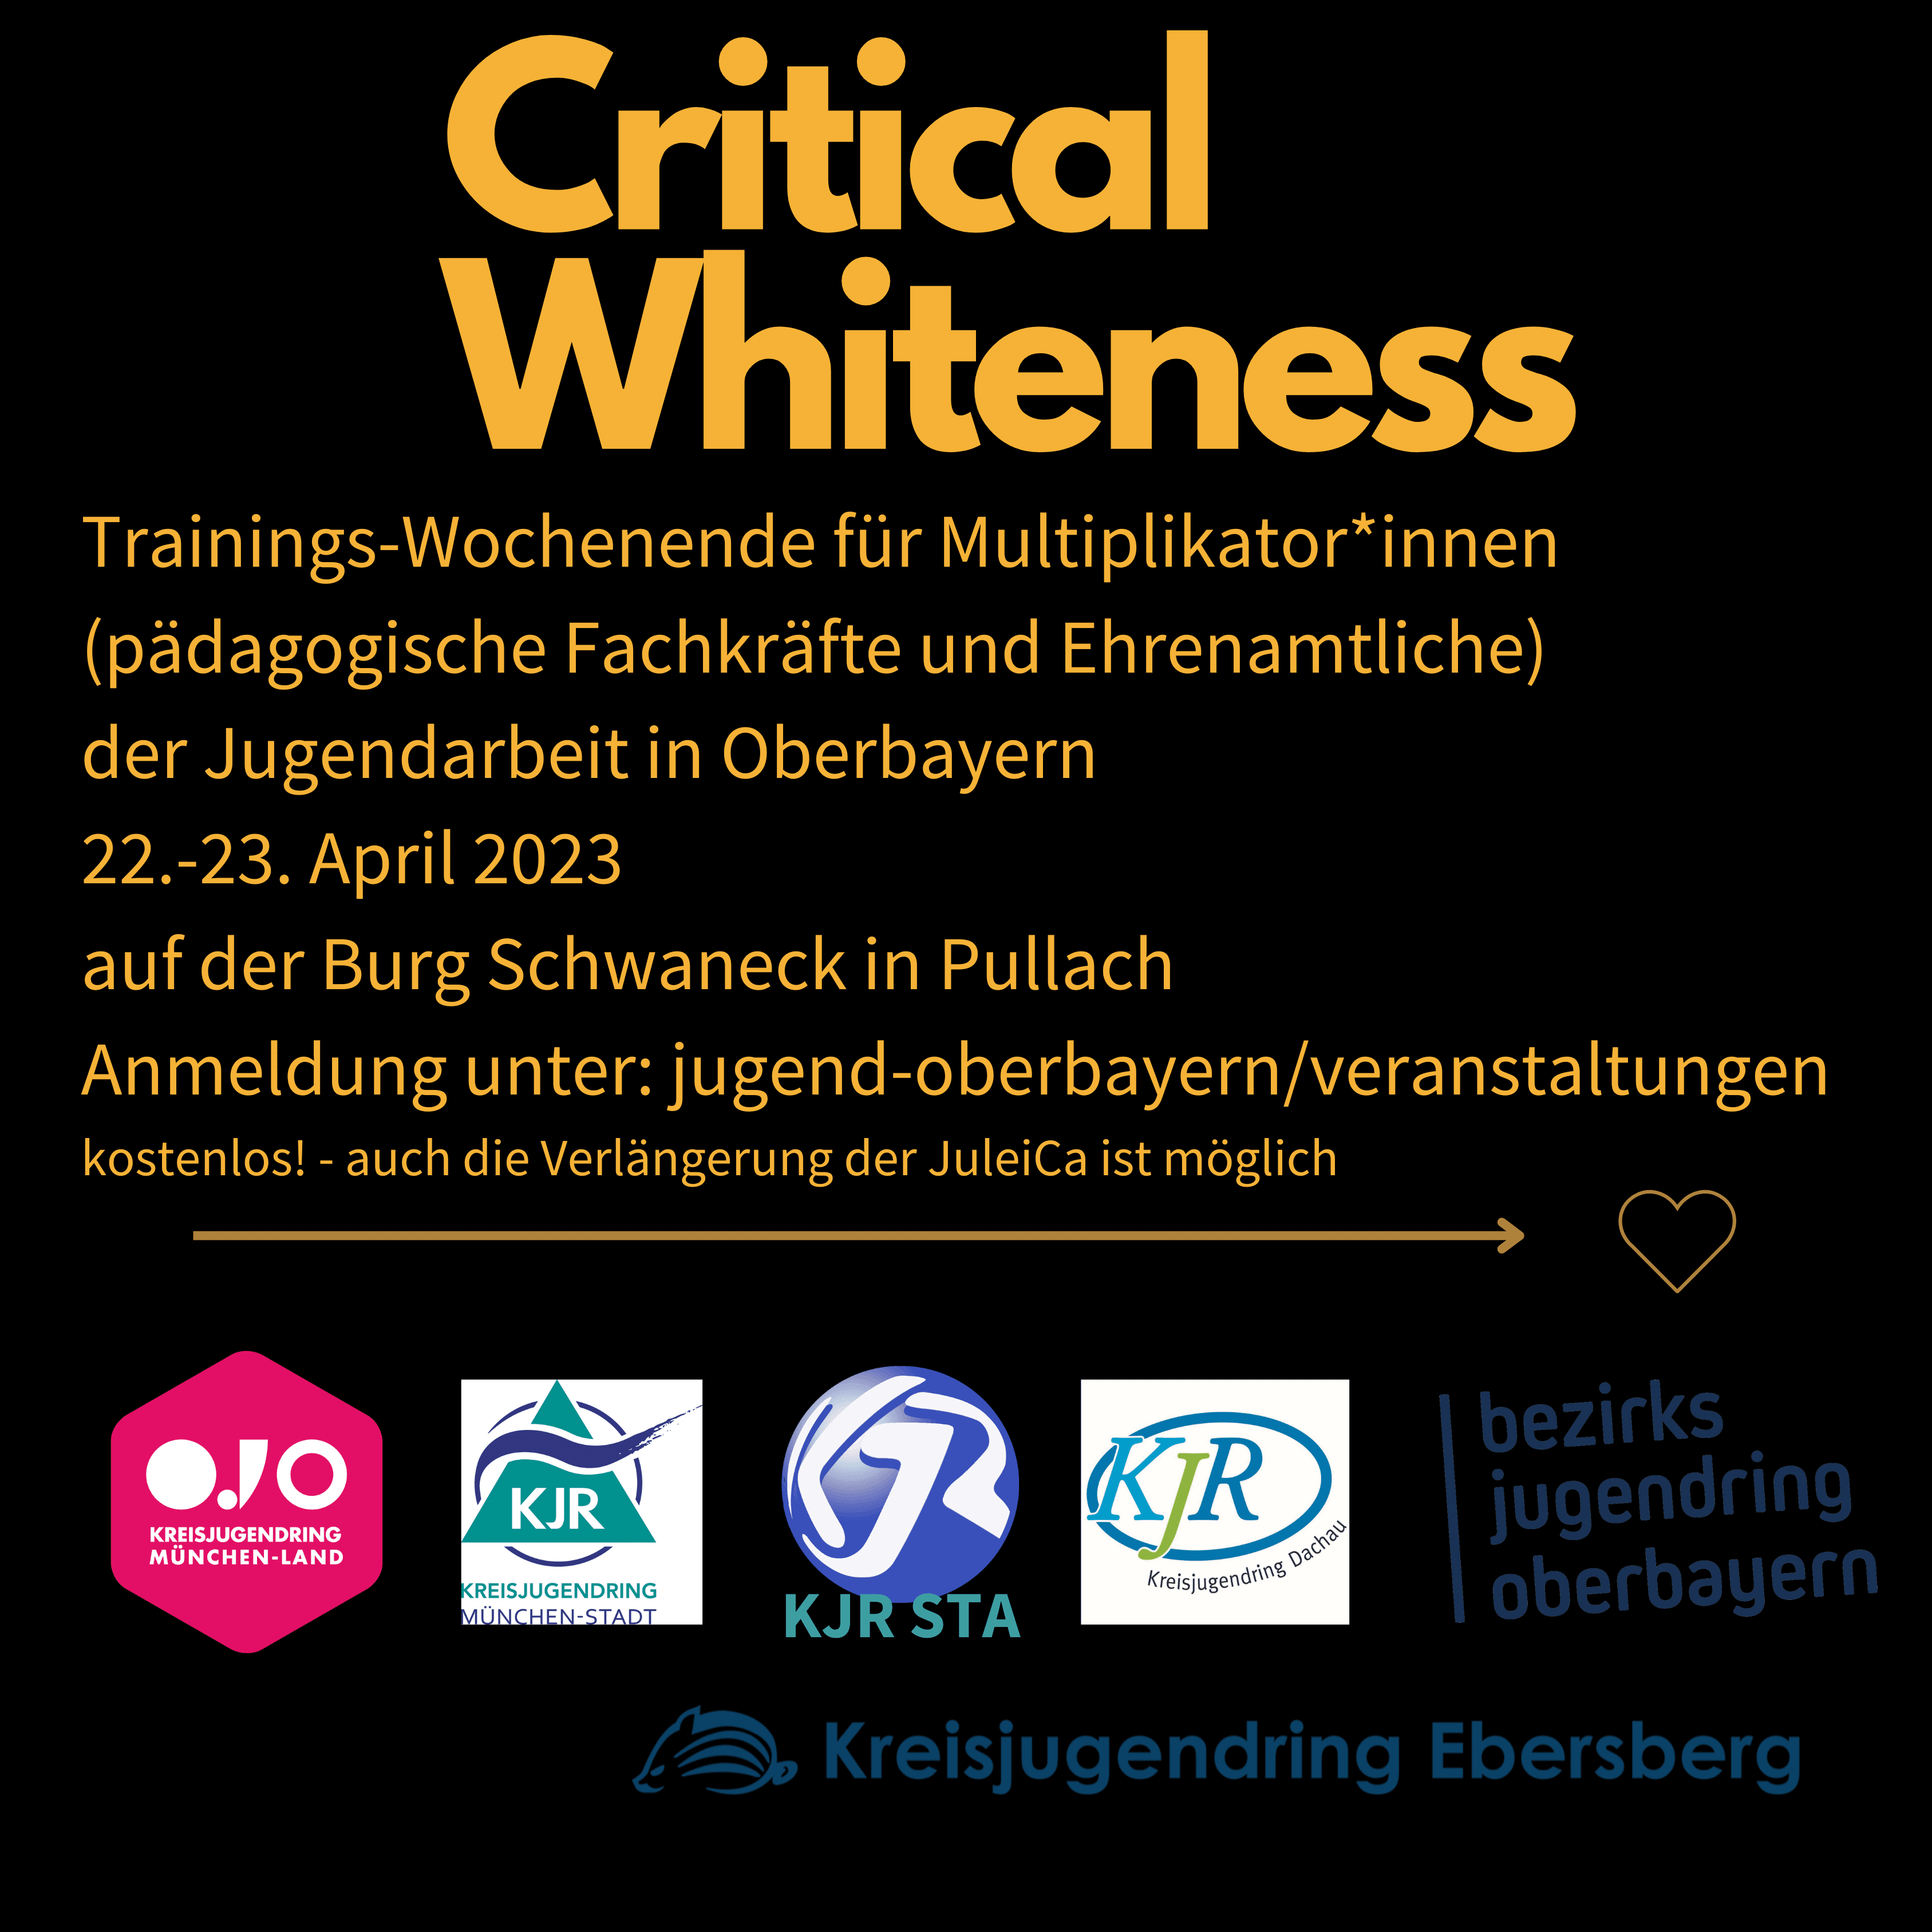 Critical Whiteness Trainings-Wochenende für Multiplikator*innen